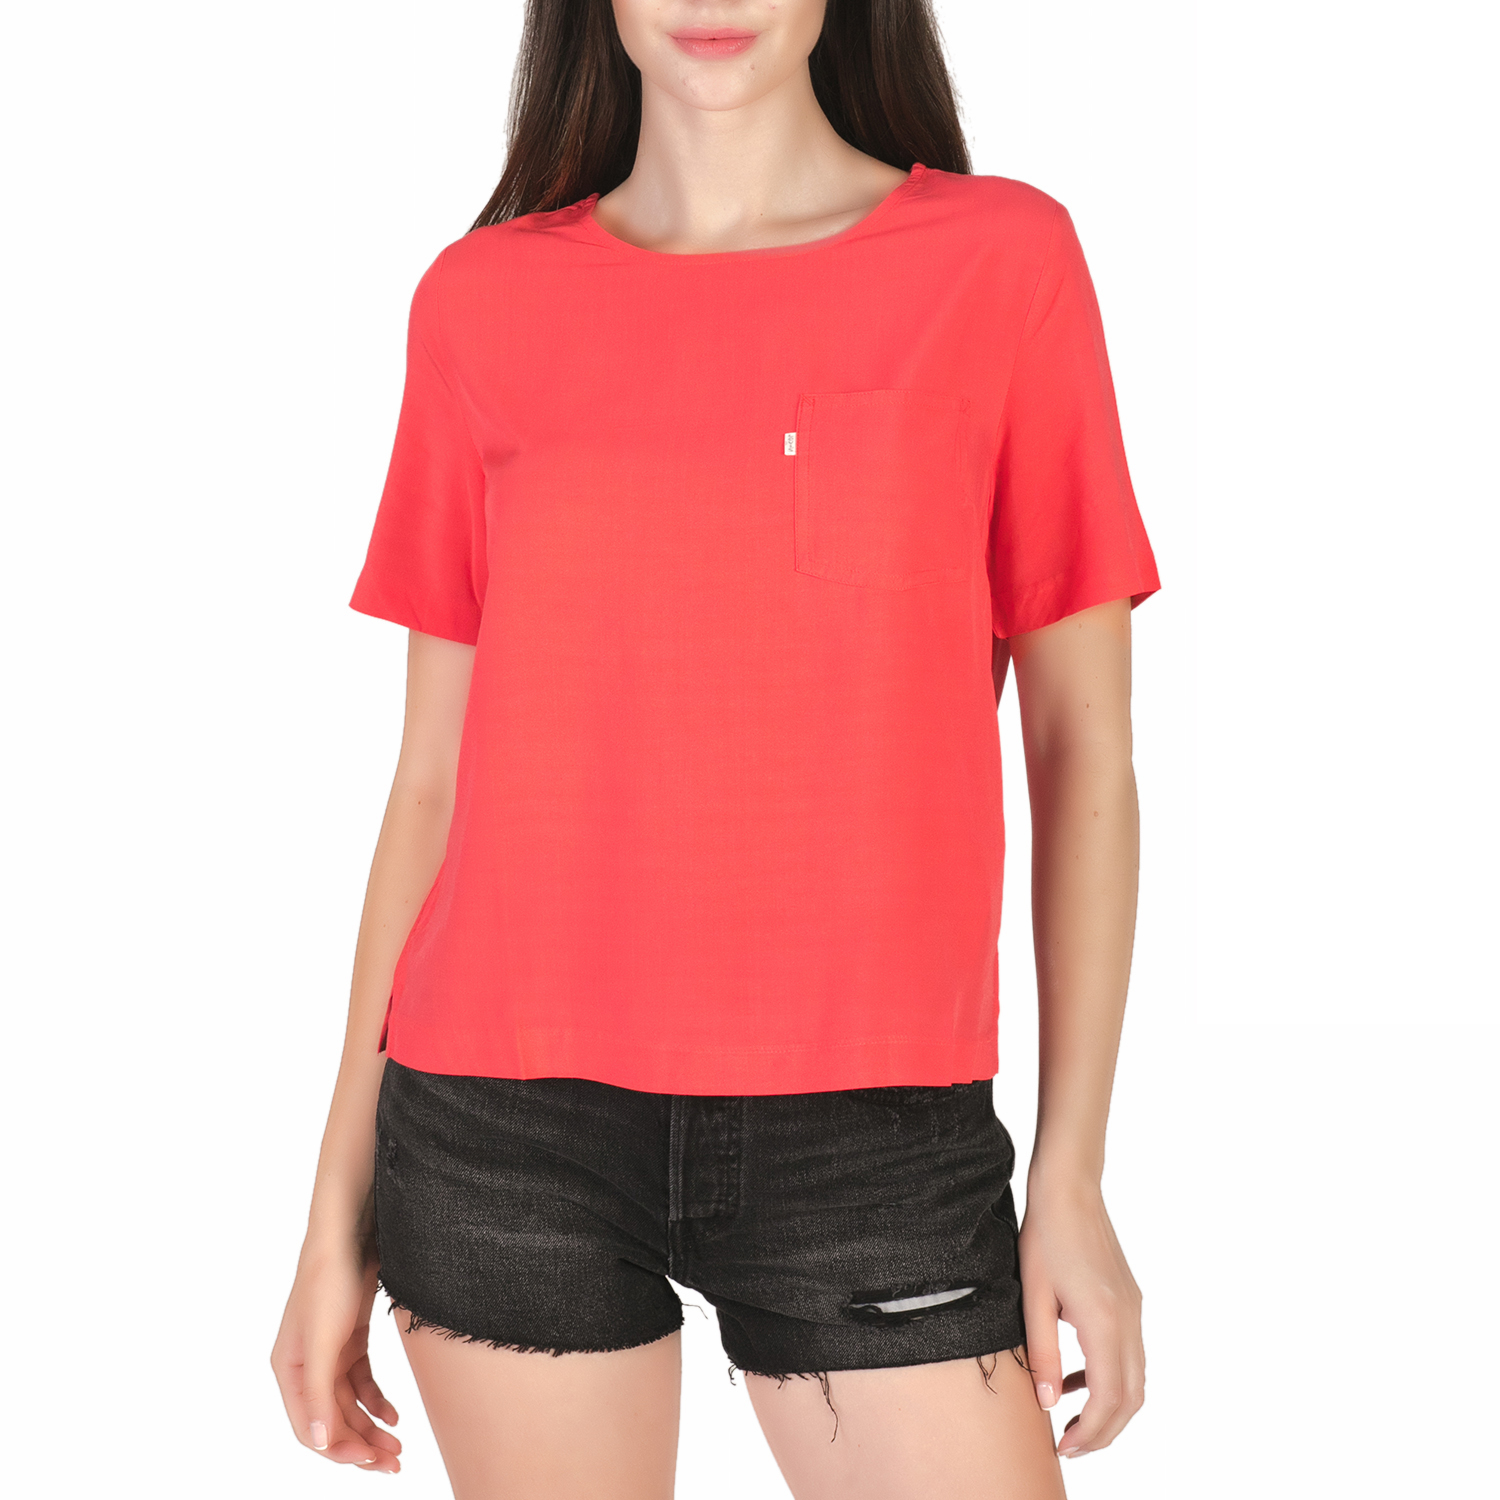 Γυναικεία/Ρούχα/Μπλούζες/Κοντομάνικες LEVI'S - Γυναικεία κοντομάνικη μπλούζα LEVI'S LEILANI 1 POCKET κόκκινη